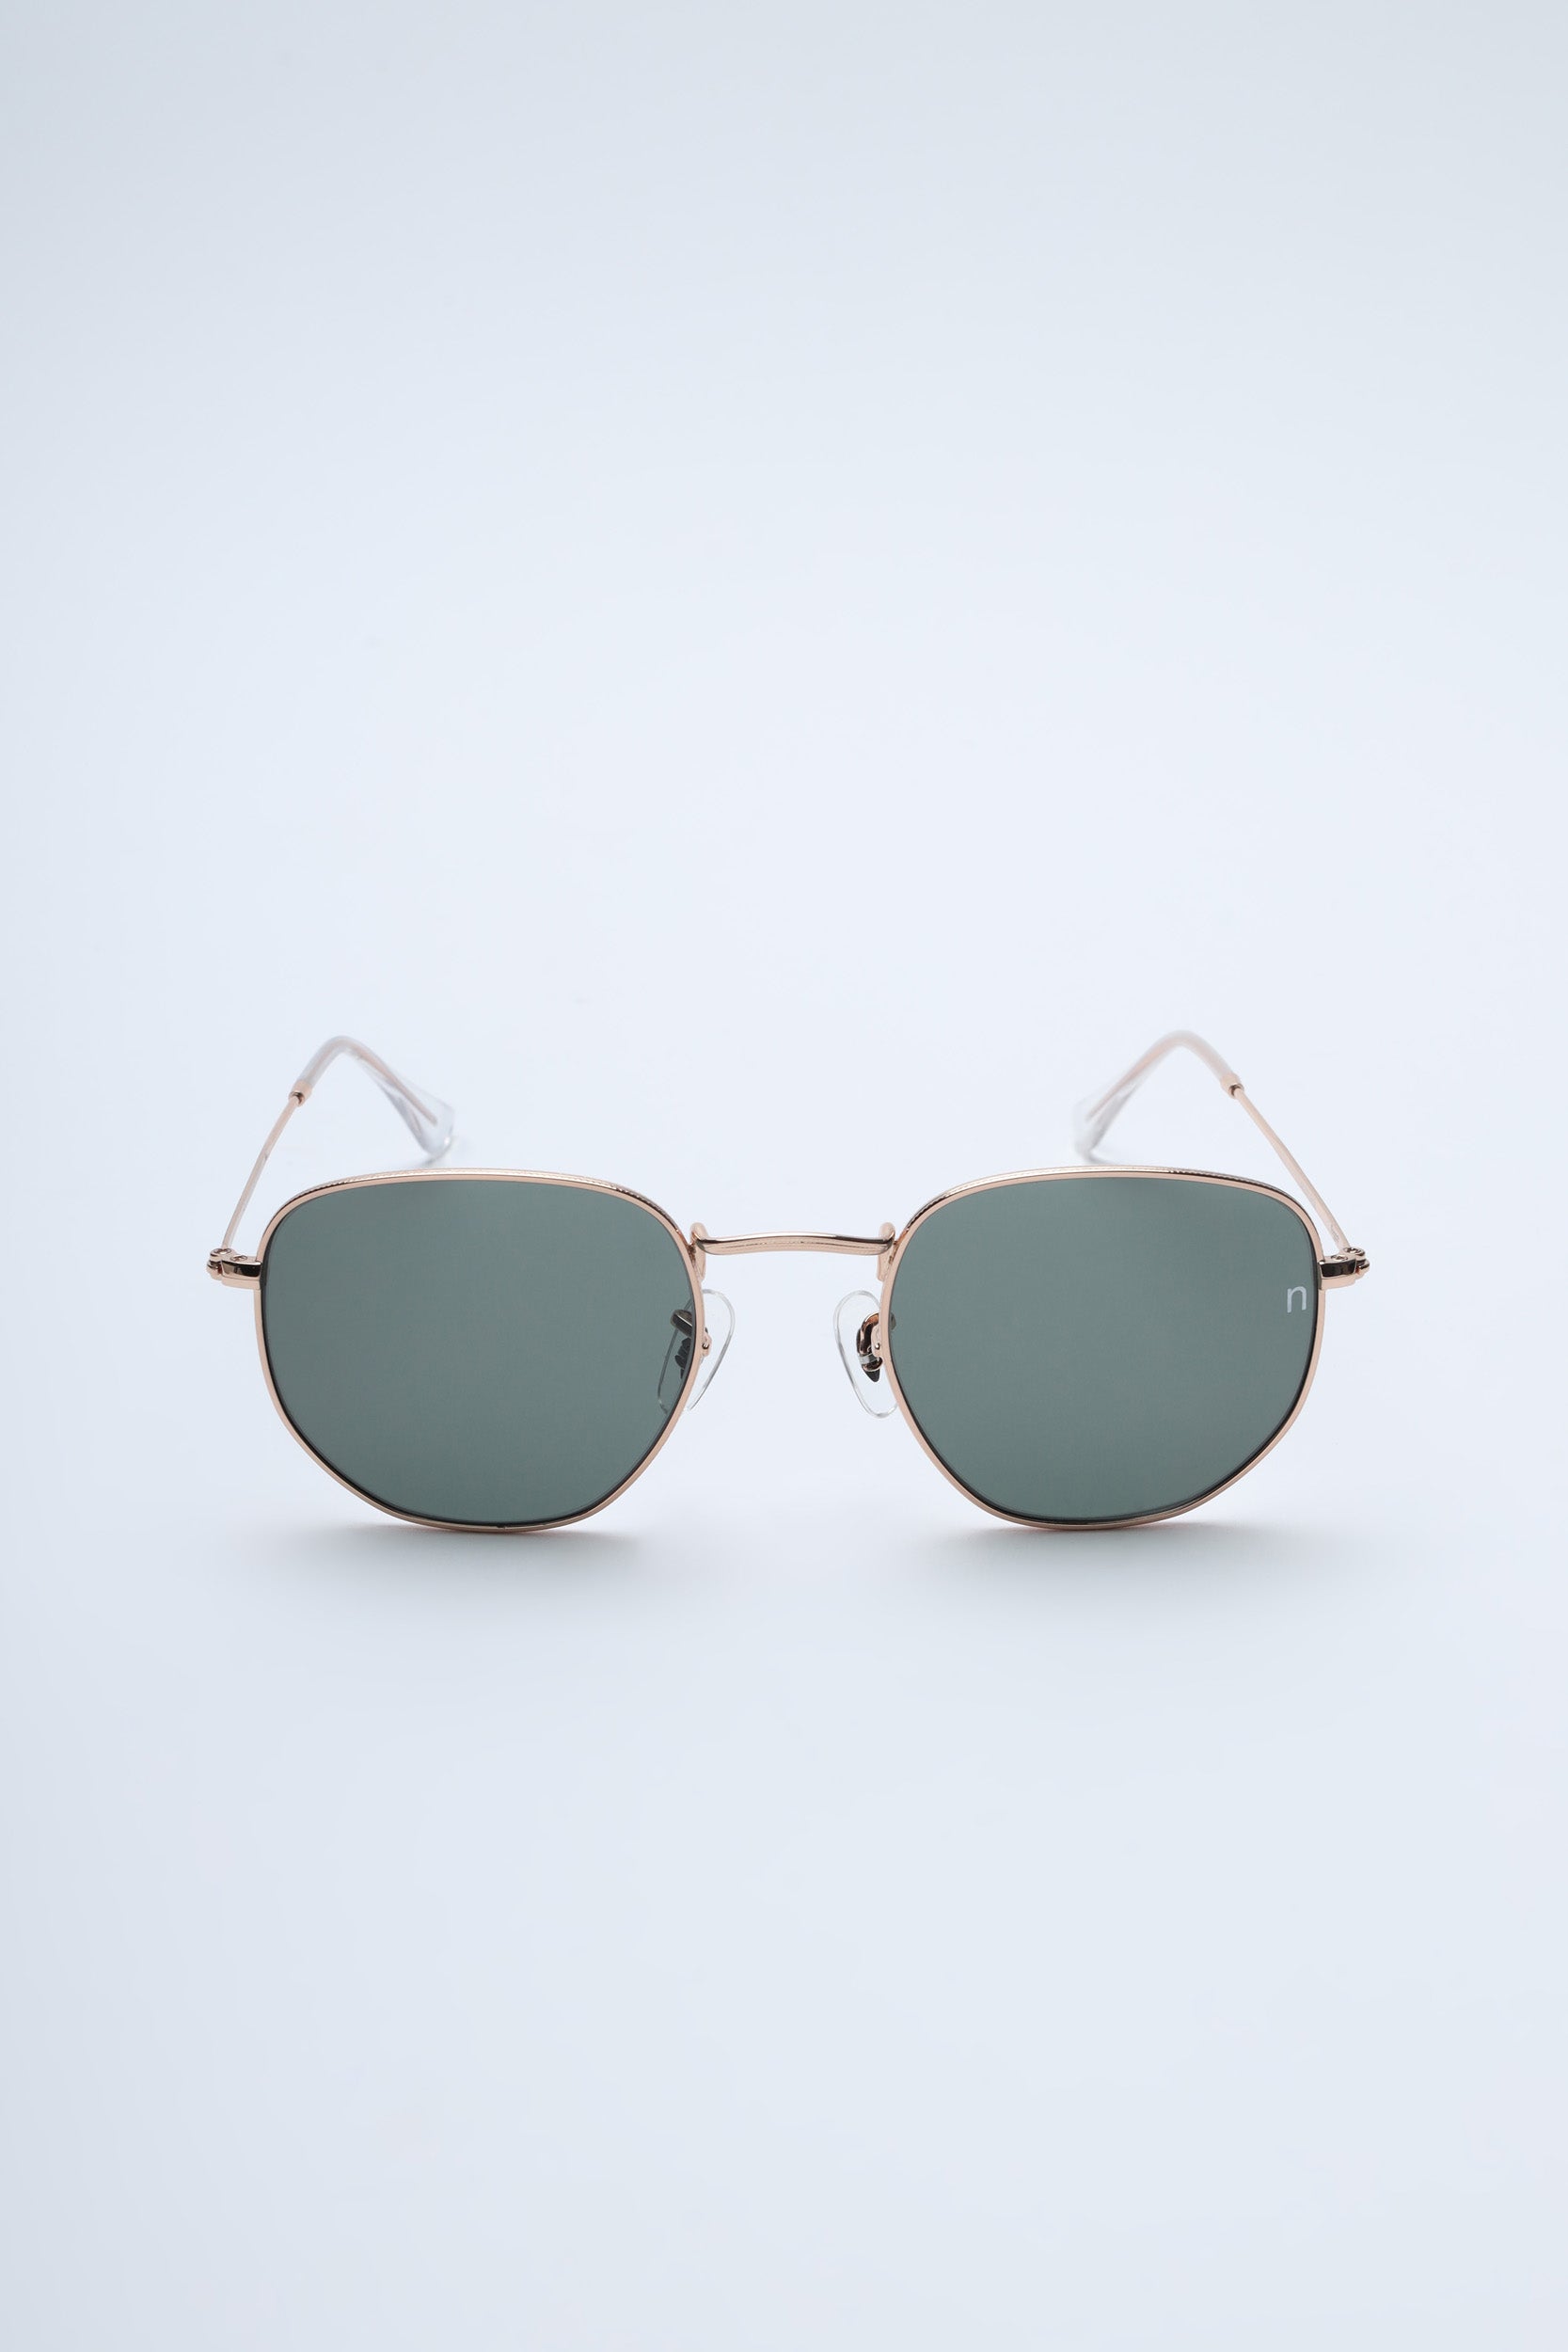 coco chanel mirror sunglasses